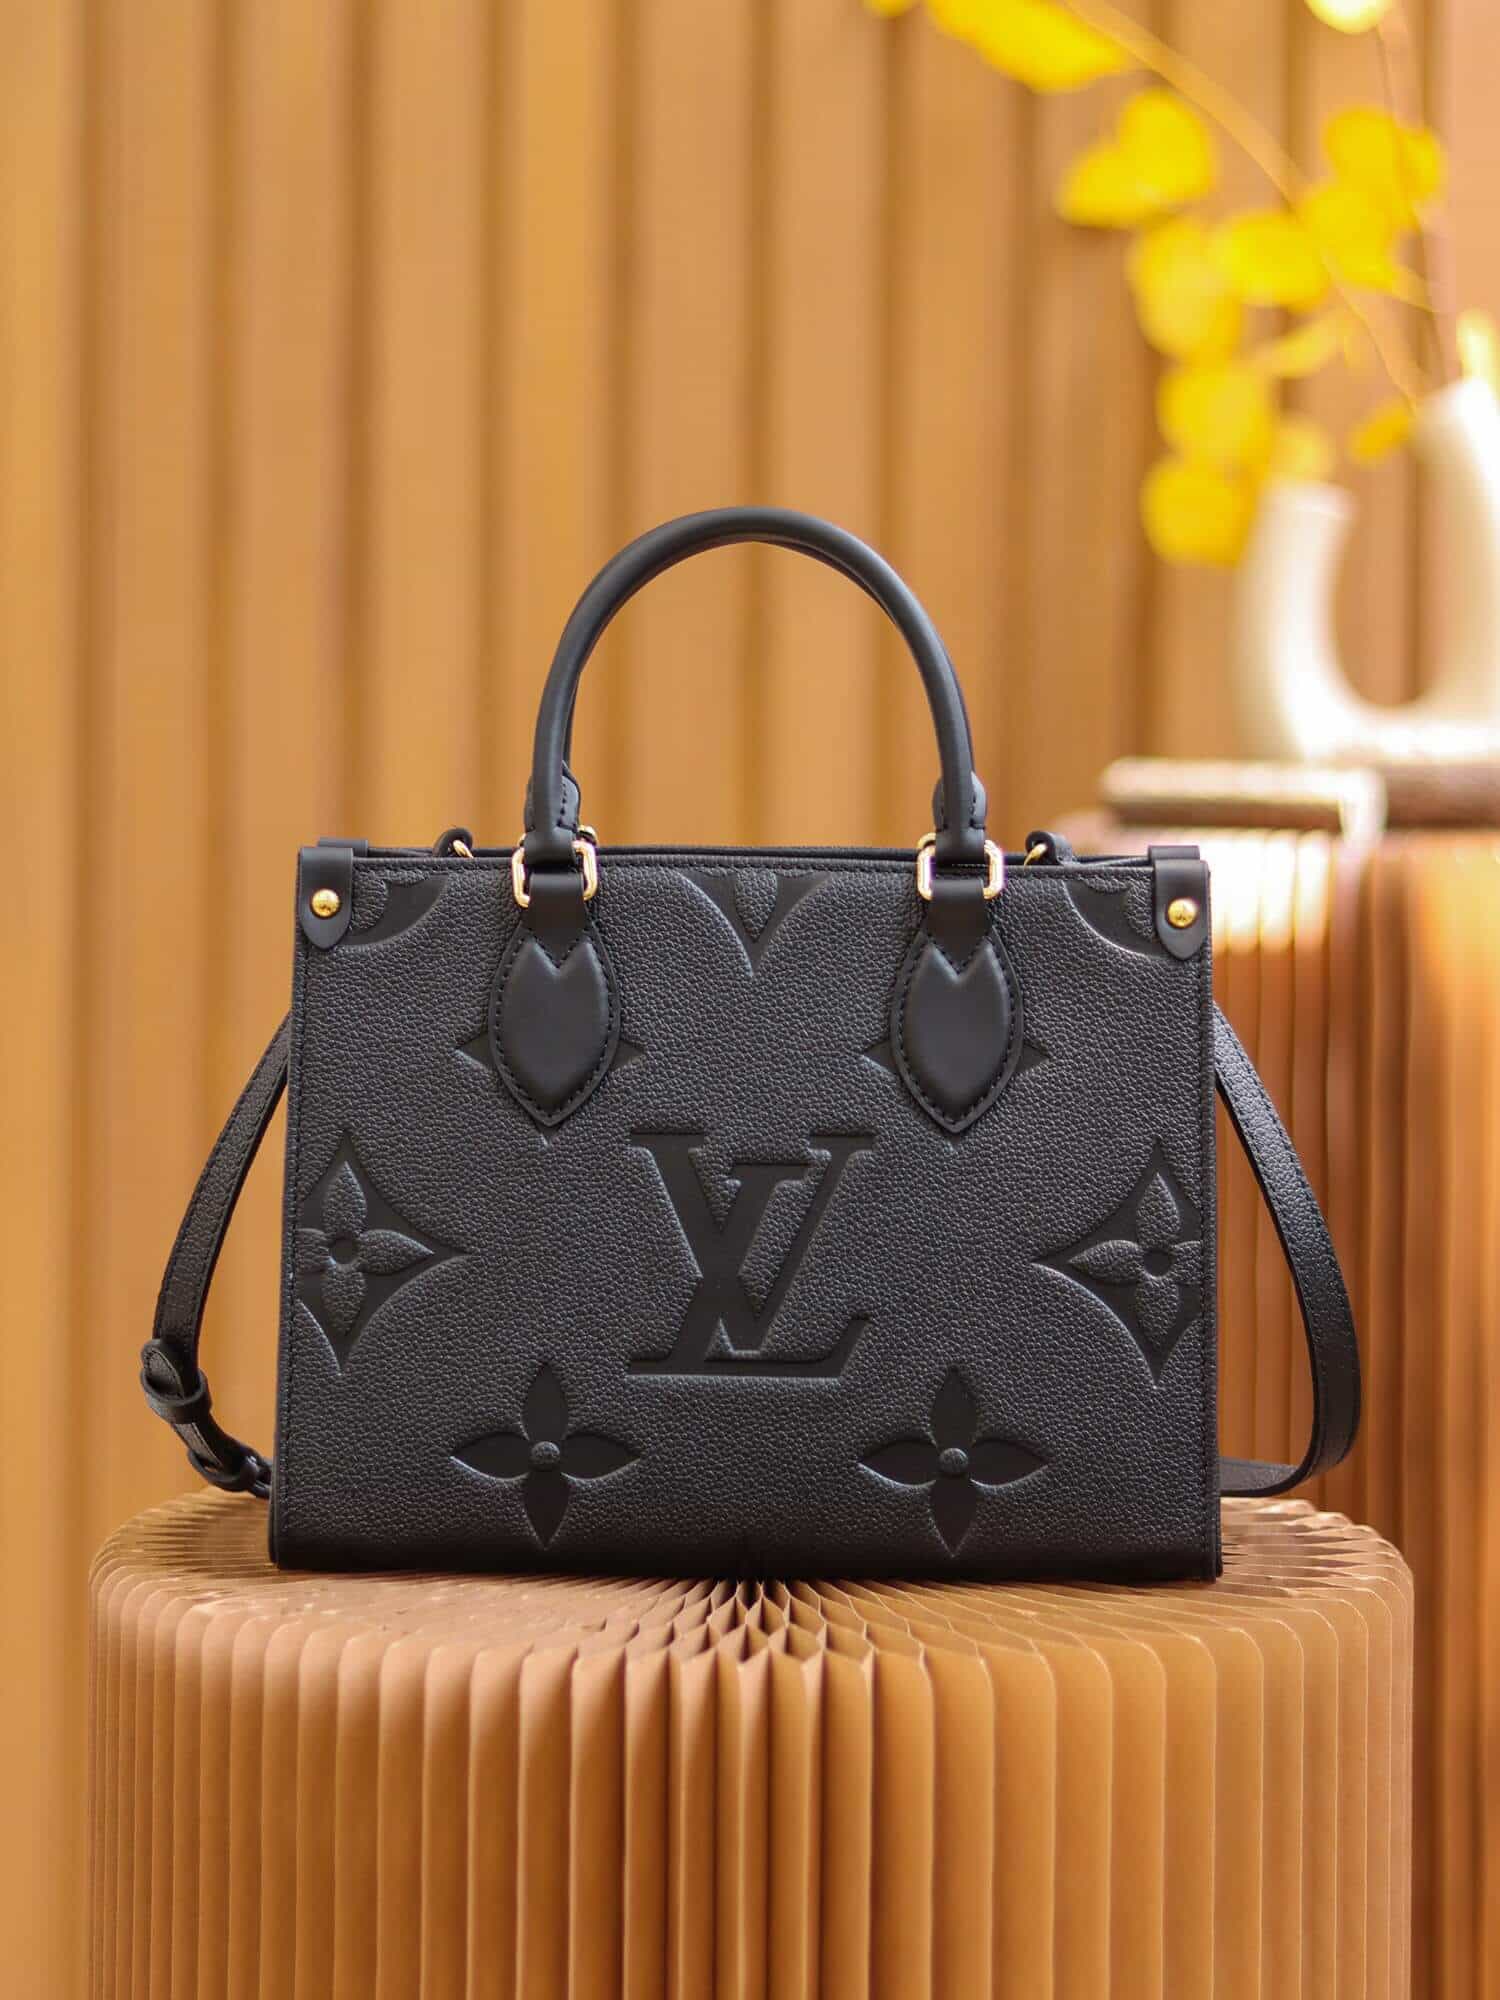 Shop Louis Vuitton Onthego pm (M45653) by RedondoBeach-LA